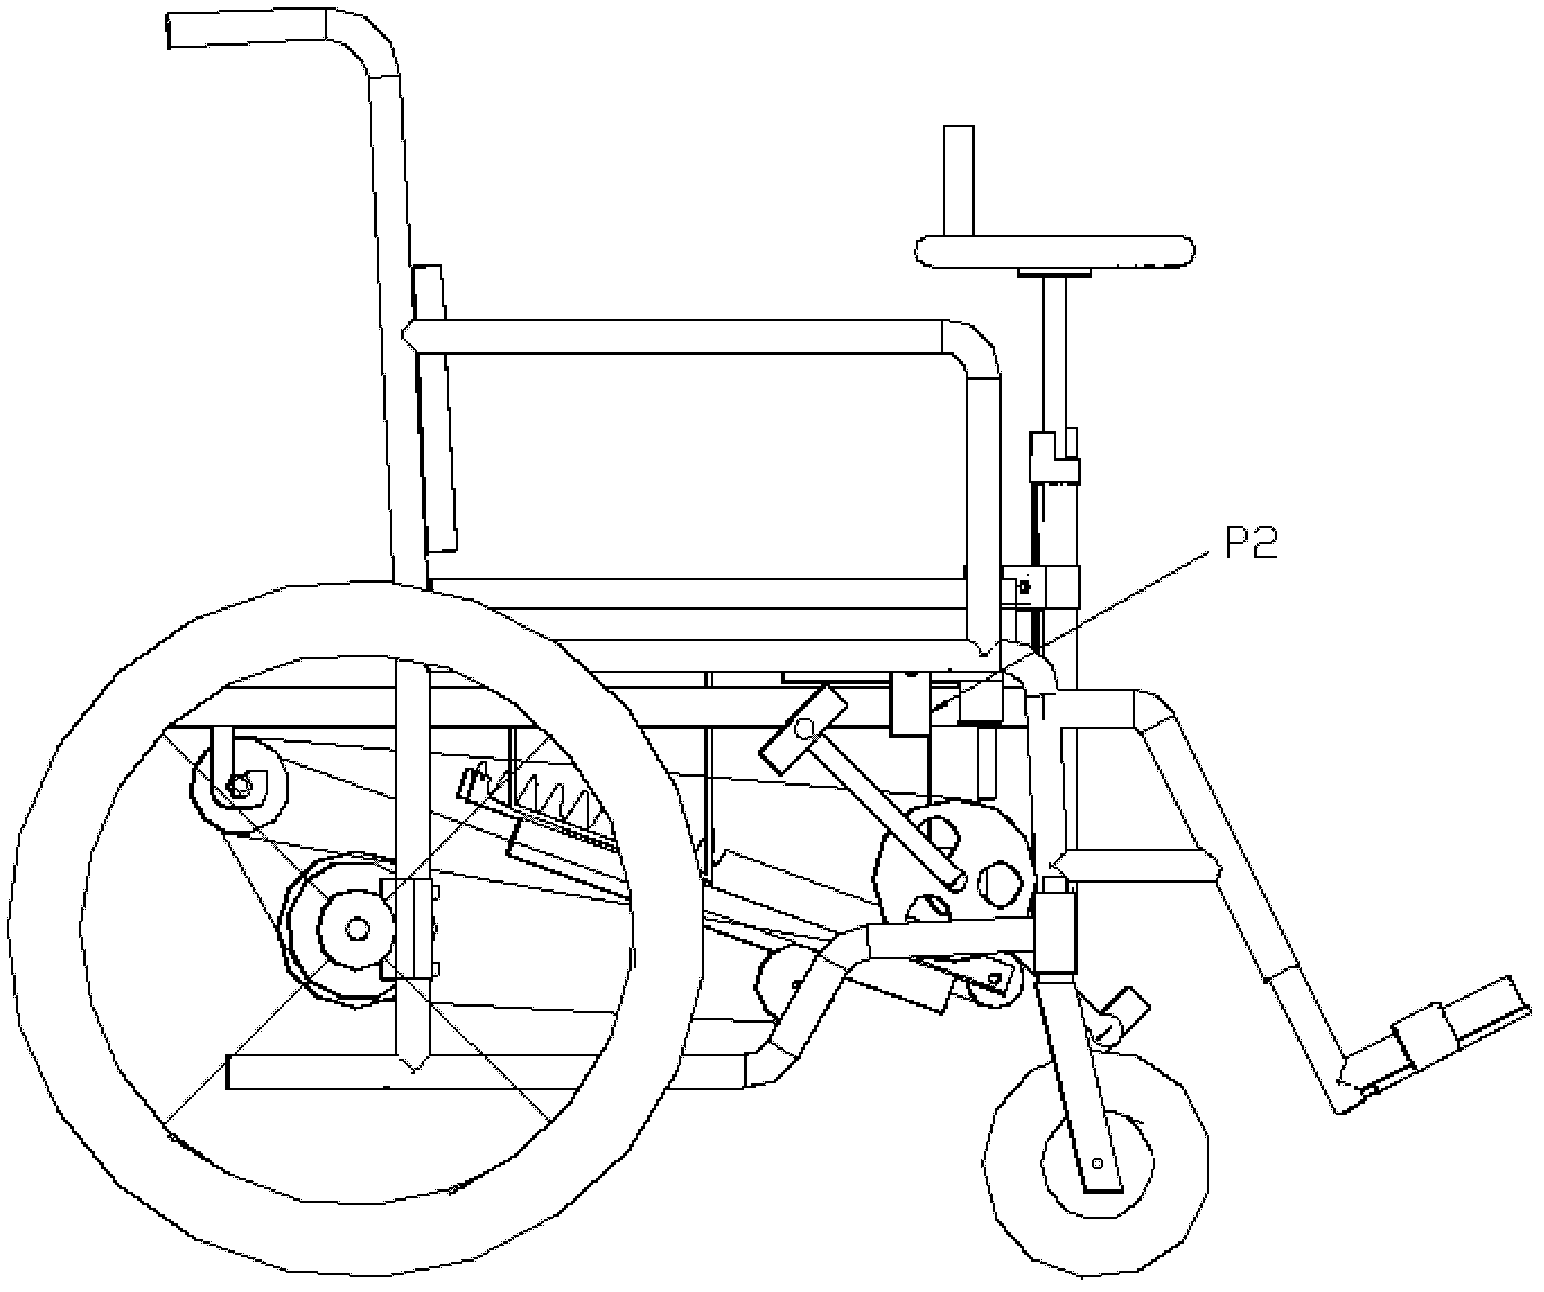 Pedal wheelchair